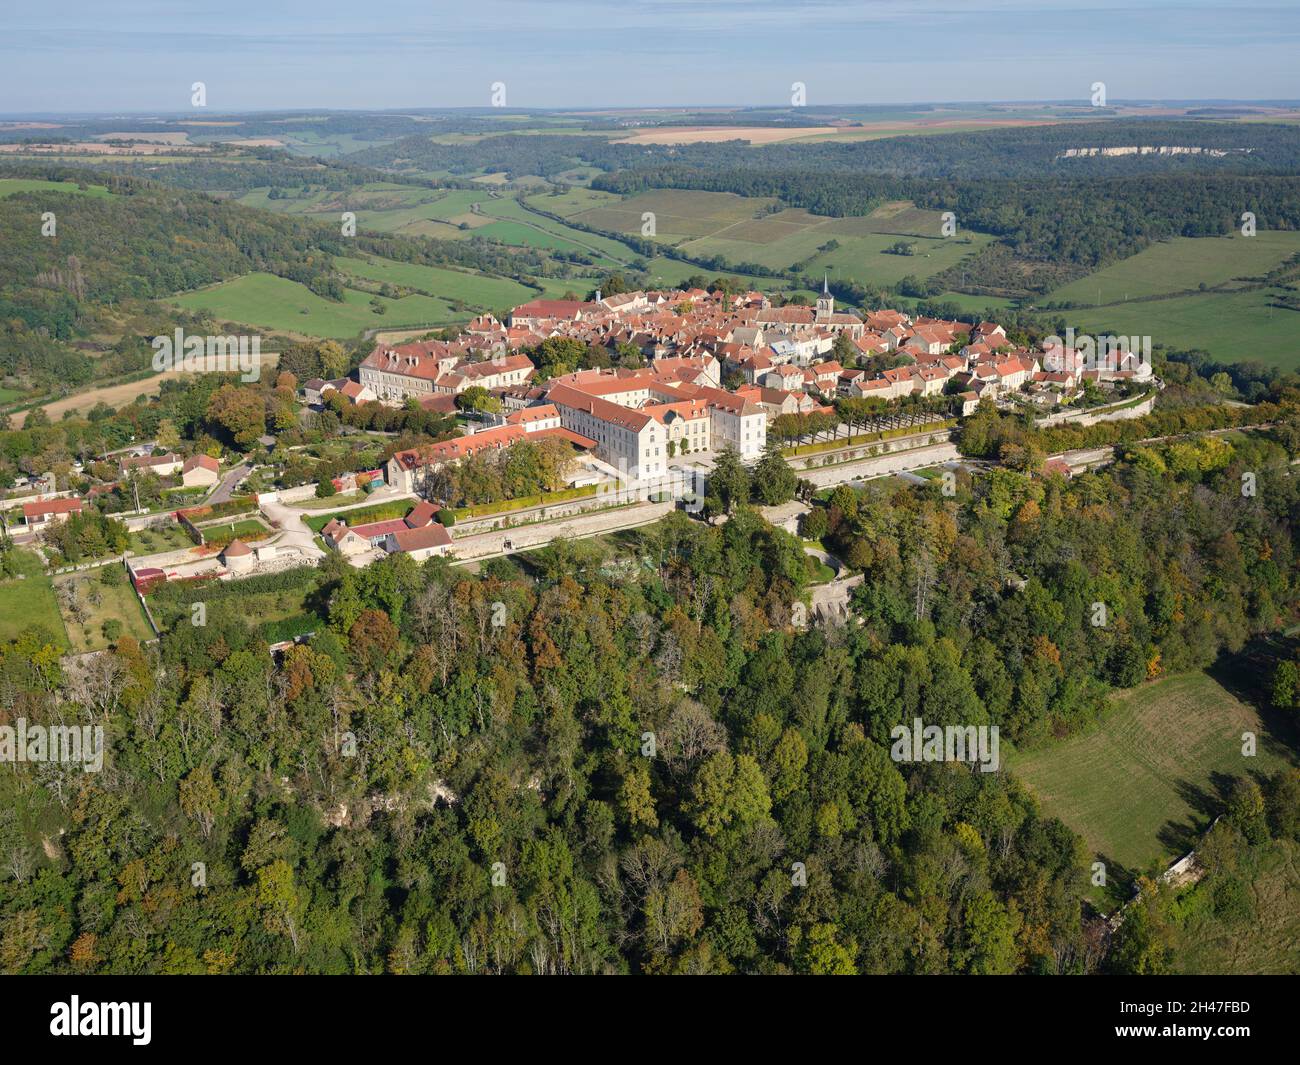 LUFTAUFNAHME. Kleine Stadt auf einem Vorgebirge mit Blick auf das Ozerain-Tal. Flavigny-sur-Ozerain, Côte d'Or, Bourgogne-Franche-Comté, Frankreich. Stockfoto